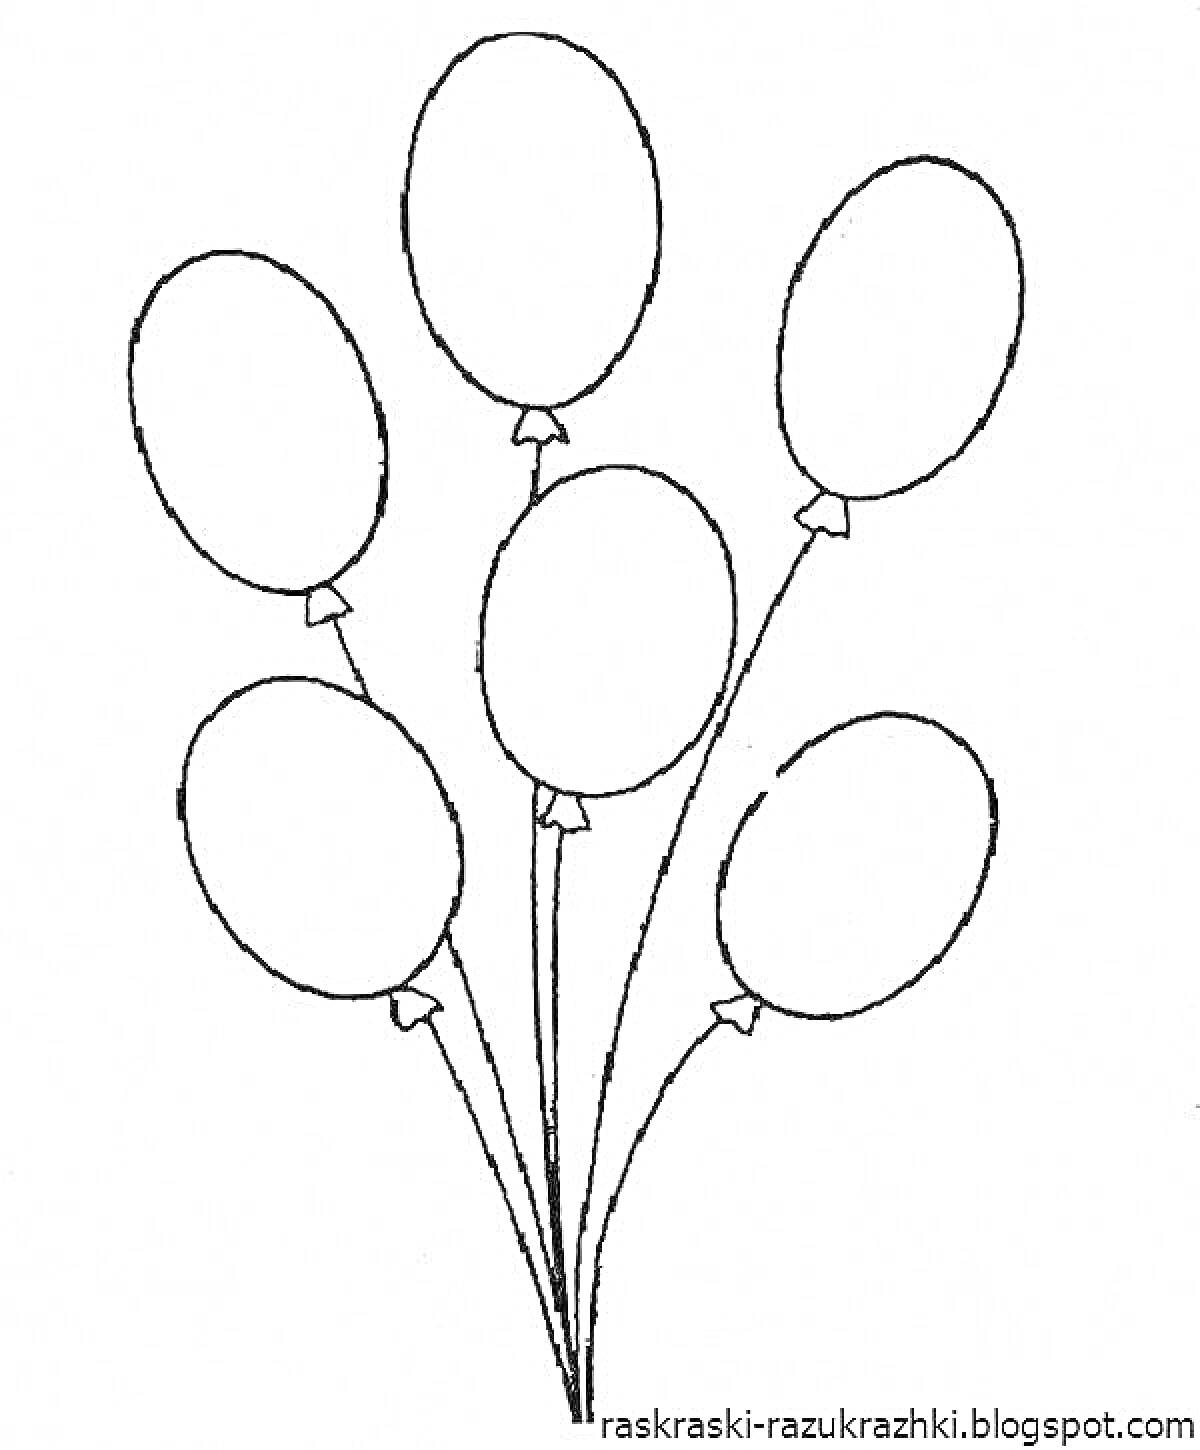 Раскраска Шесть воздушных шариков с нитками